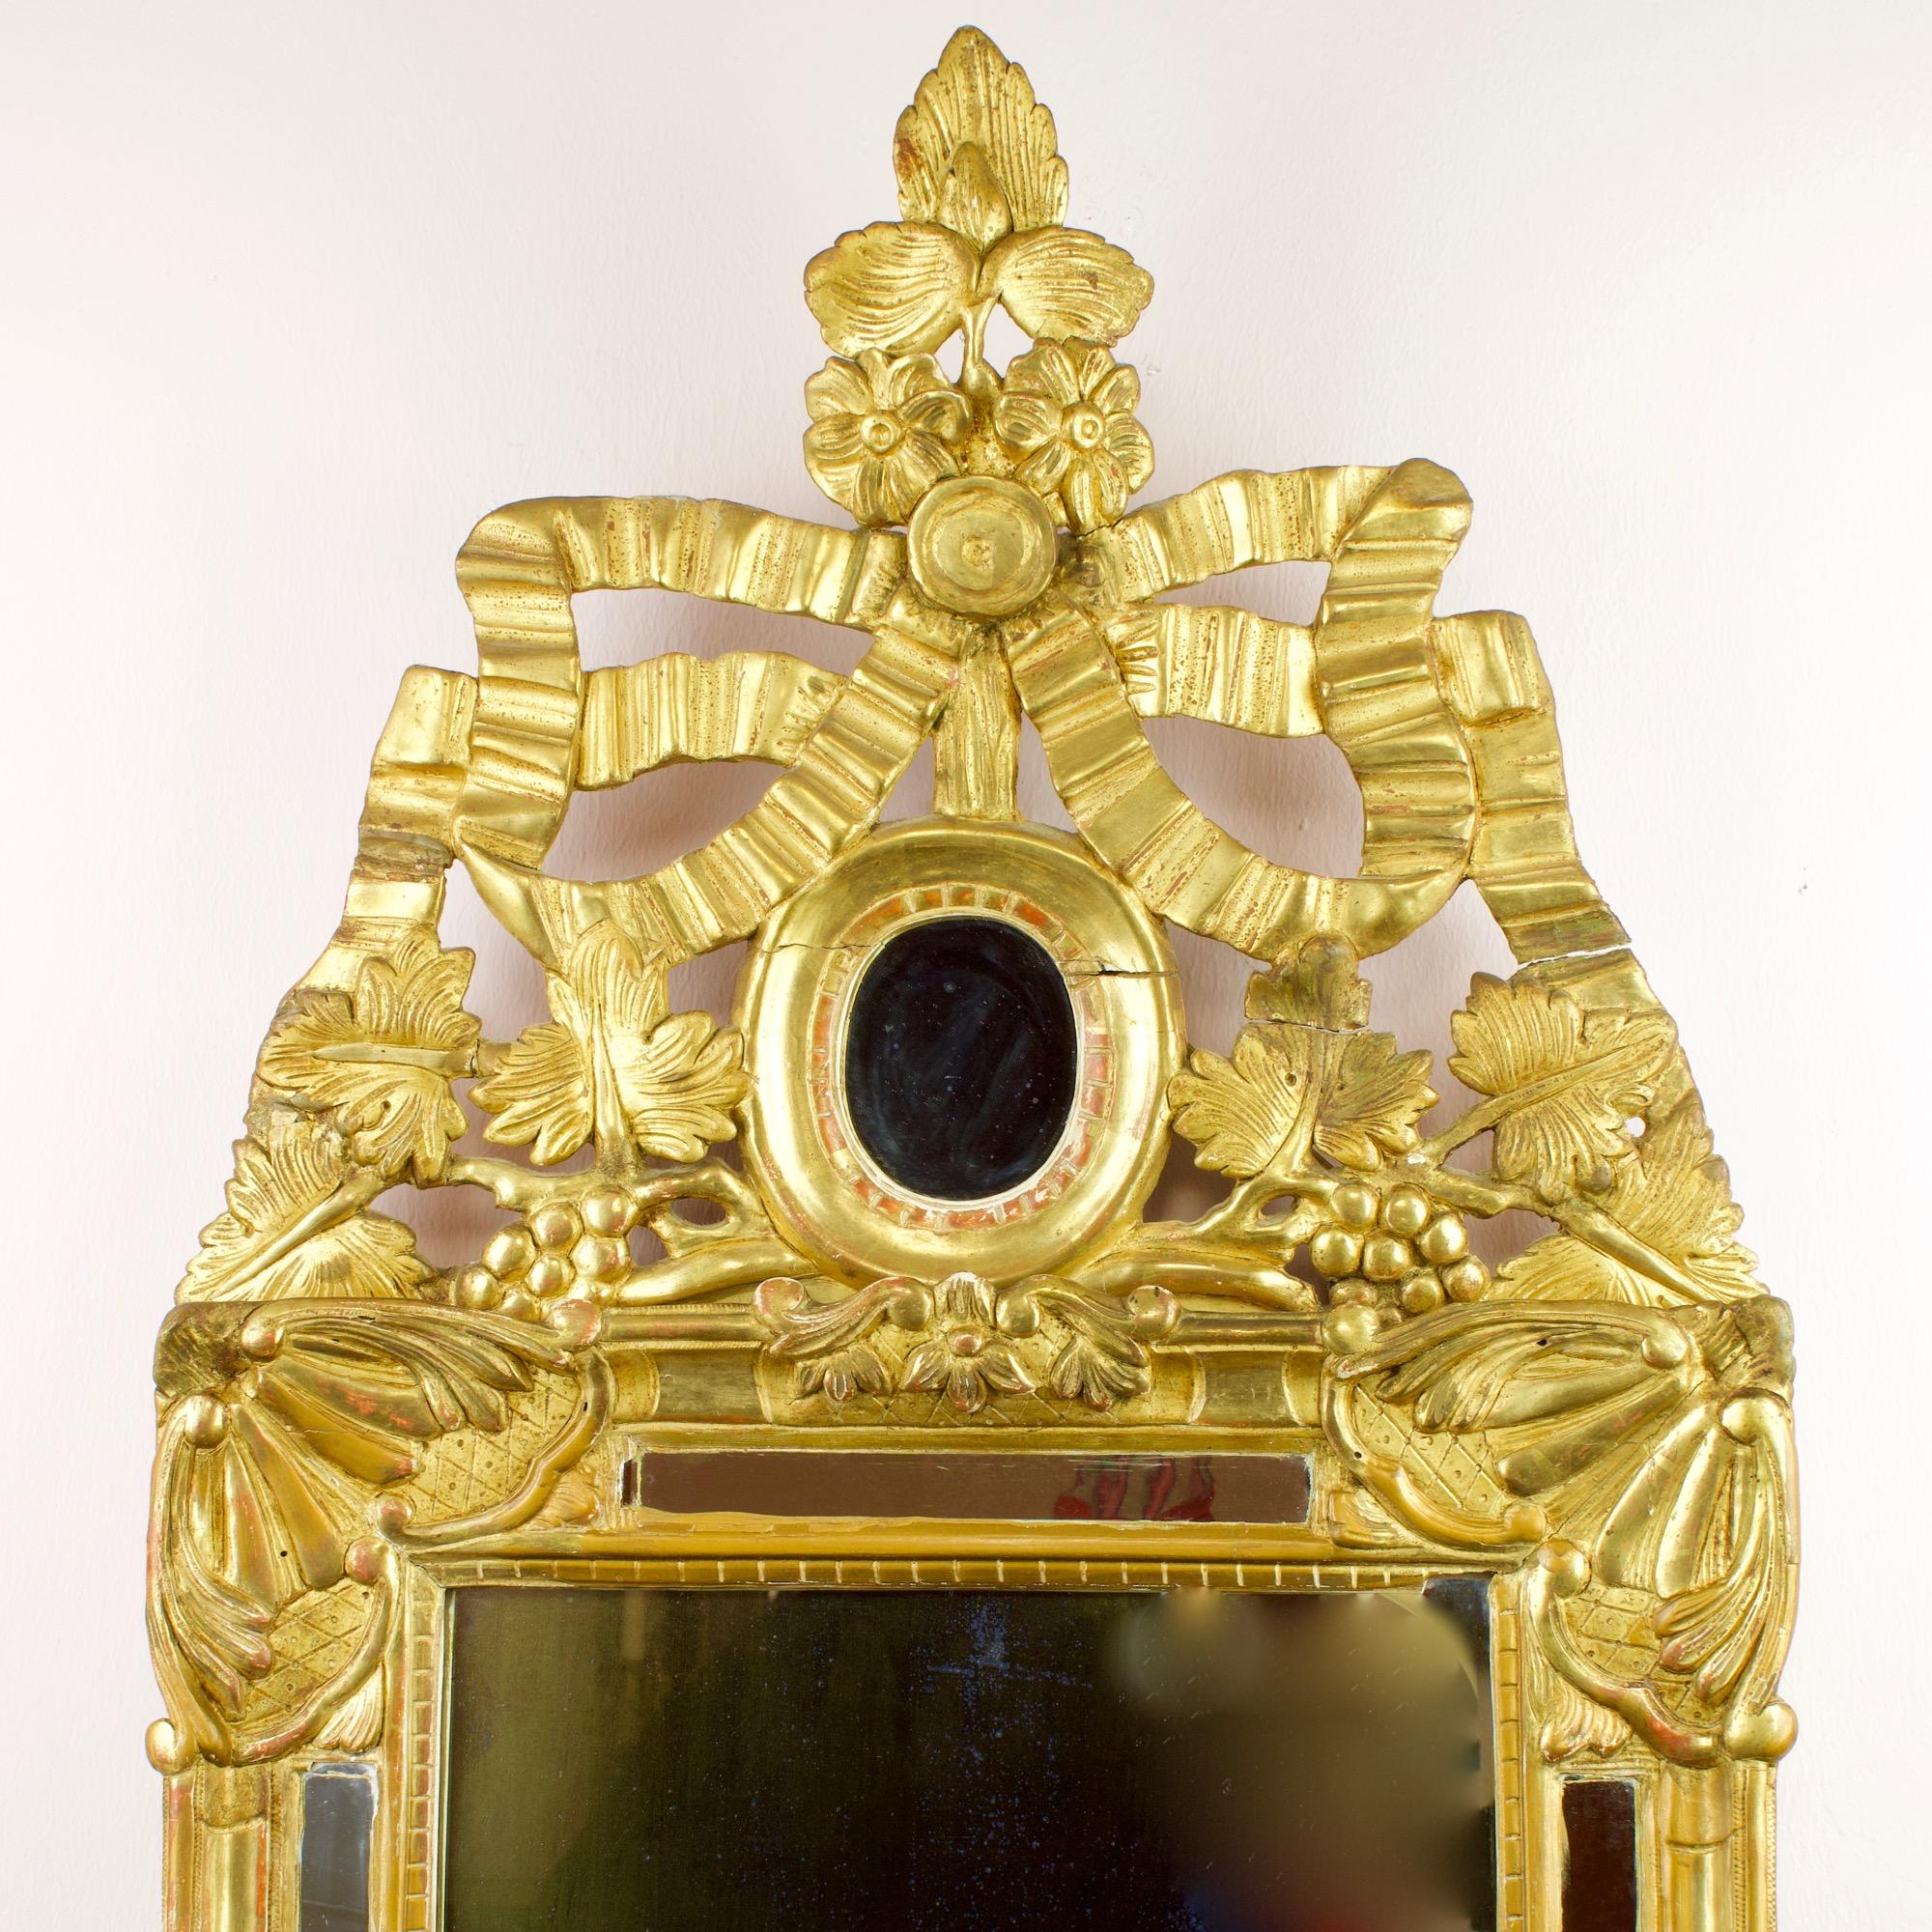 Miroir mural en bois doré du XVIIIe siècle, de style Transition Provençale/Louis XVI, à décor de rubans

Un cadre en bois doré avec une plaque de miroir ancien, dans une bordure de miroir, les coins du début avec des feuilles d'acanthe, la crête